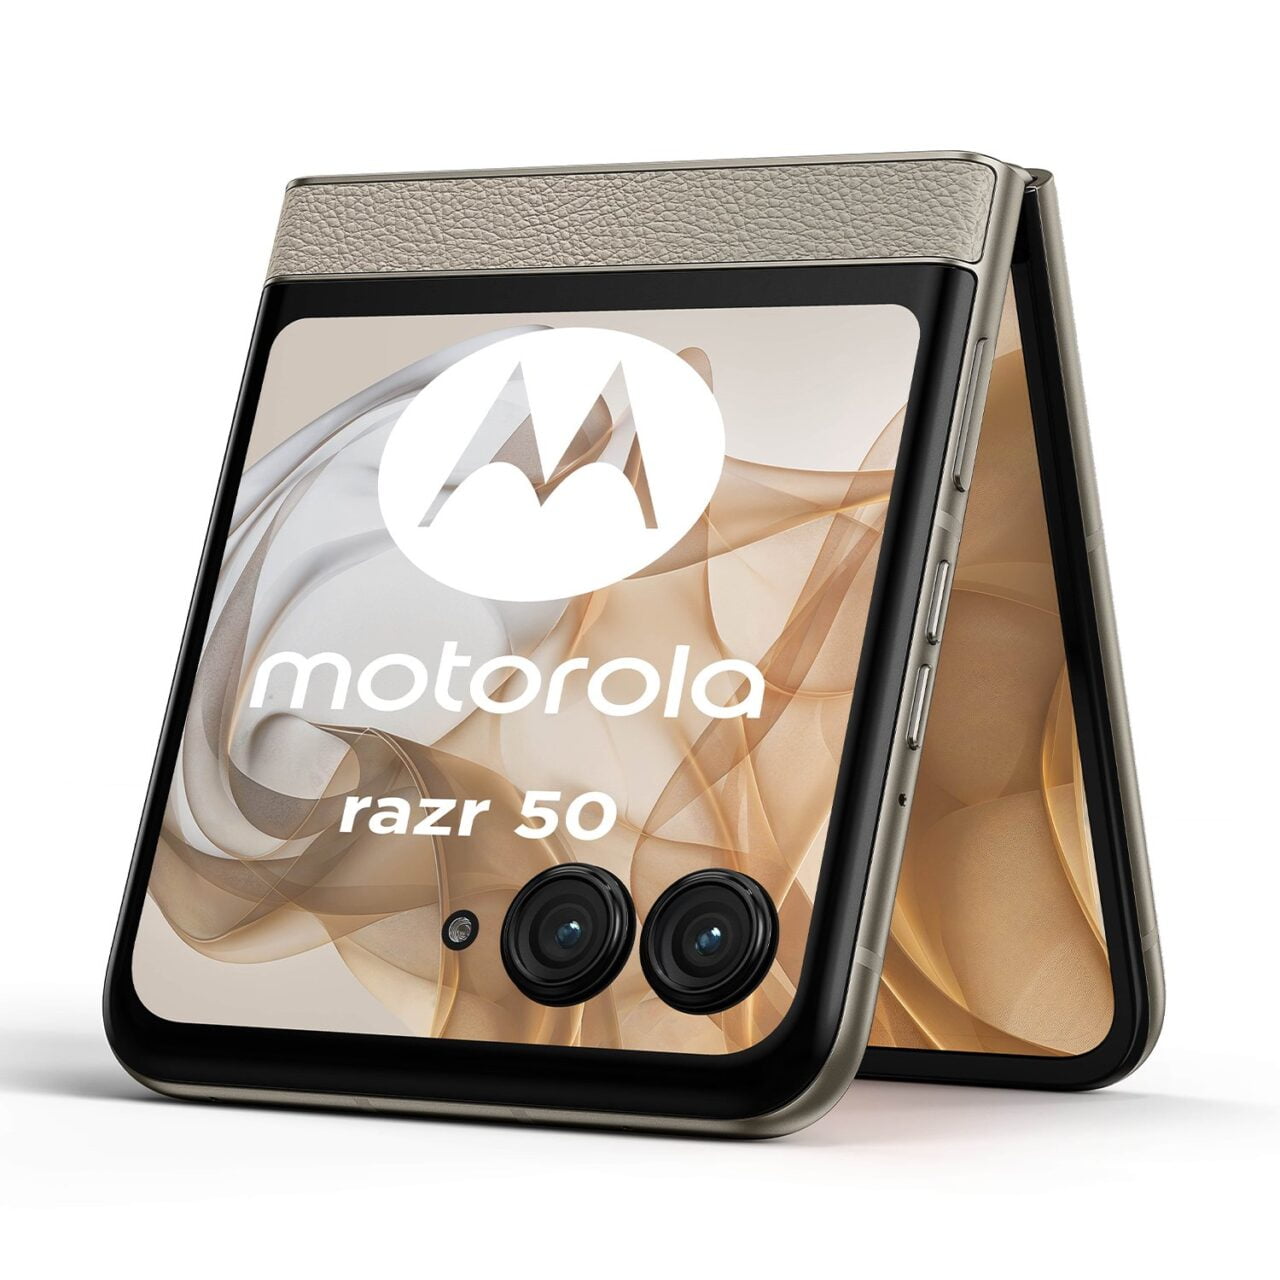 Składany smartfon Motorola Razr 50 w kolorach beżu i brązu, z wyświetlaczem przednim i dwoma aparatami fotograficznymi.